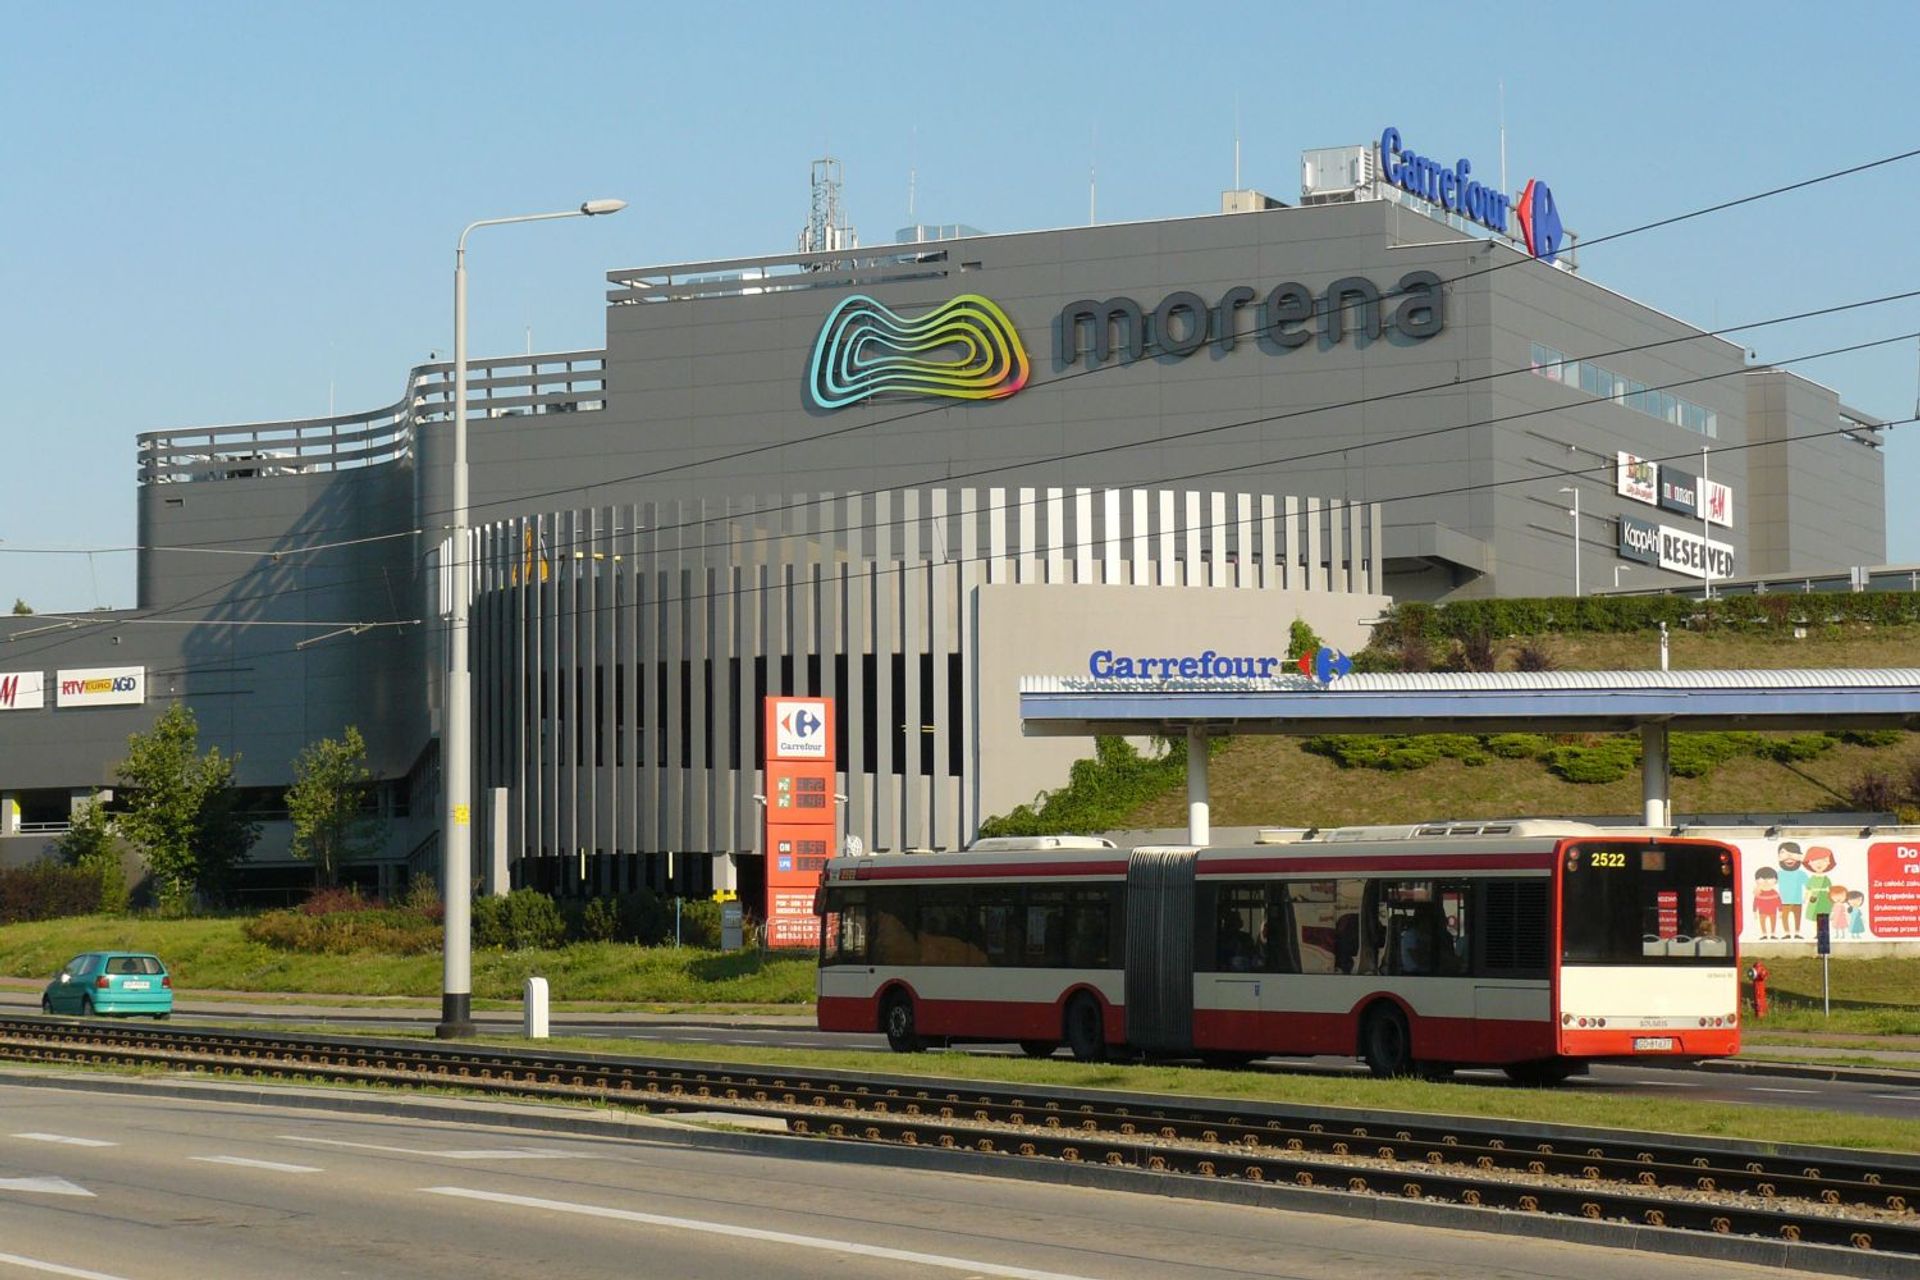  Galeria Morena najnowocześniejsza w Polsce